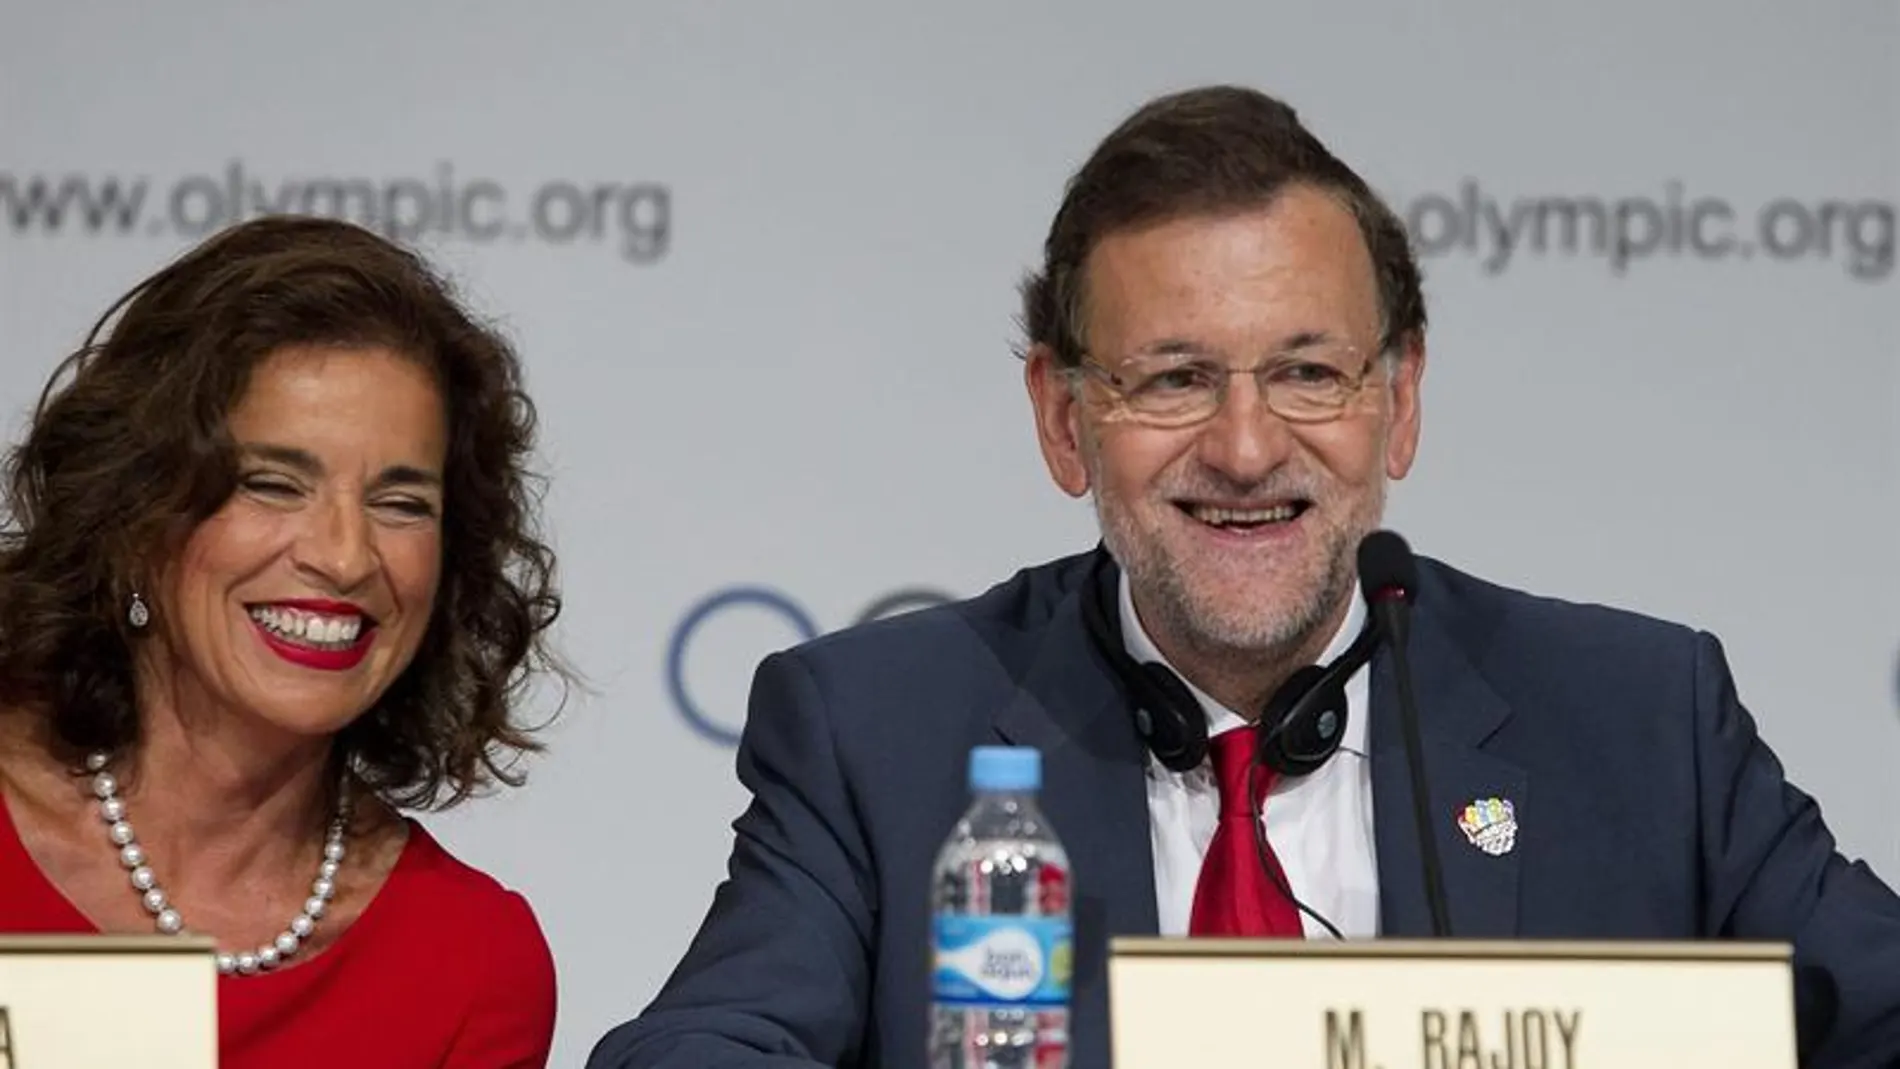 Ana Botella y Mariano Rajoy el día de la eliminación de la candidatura de Madrid 2020